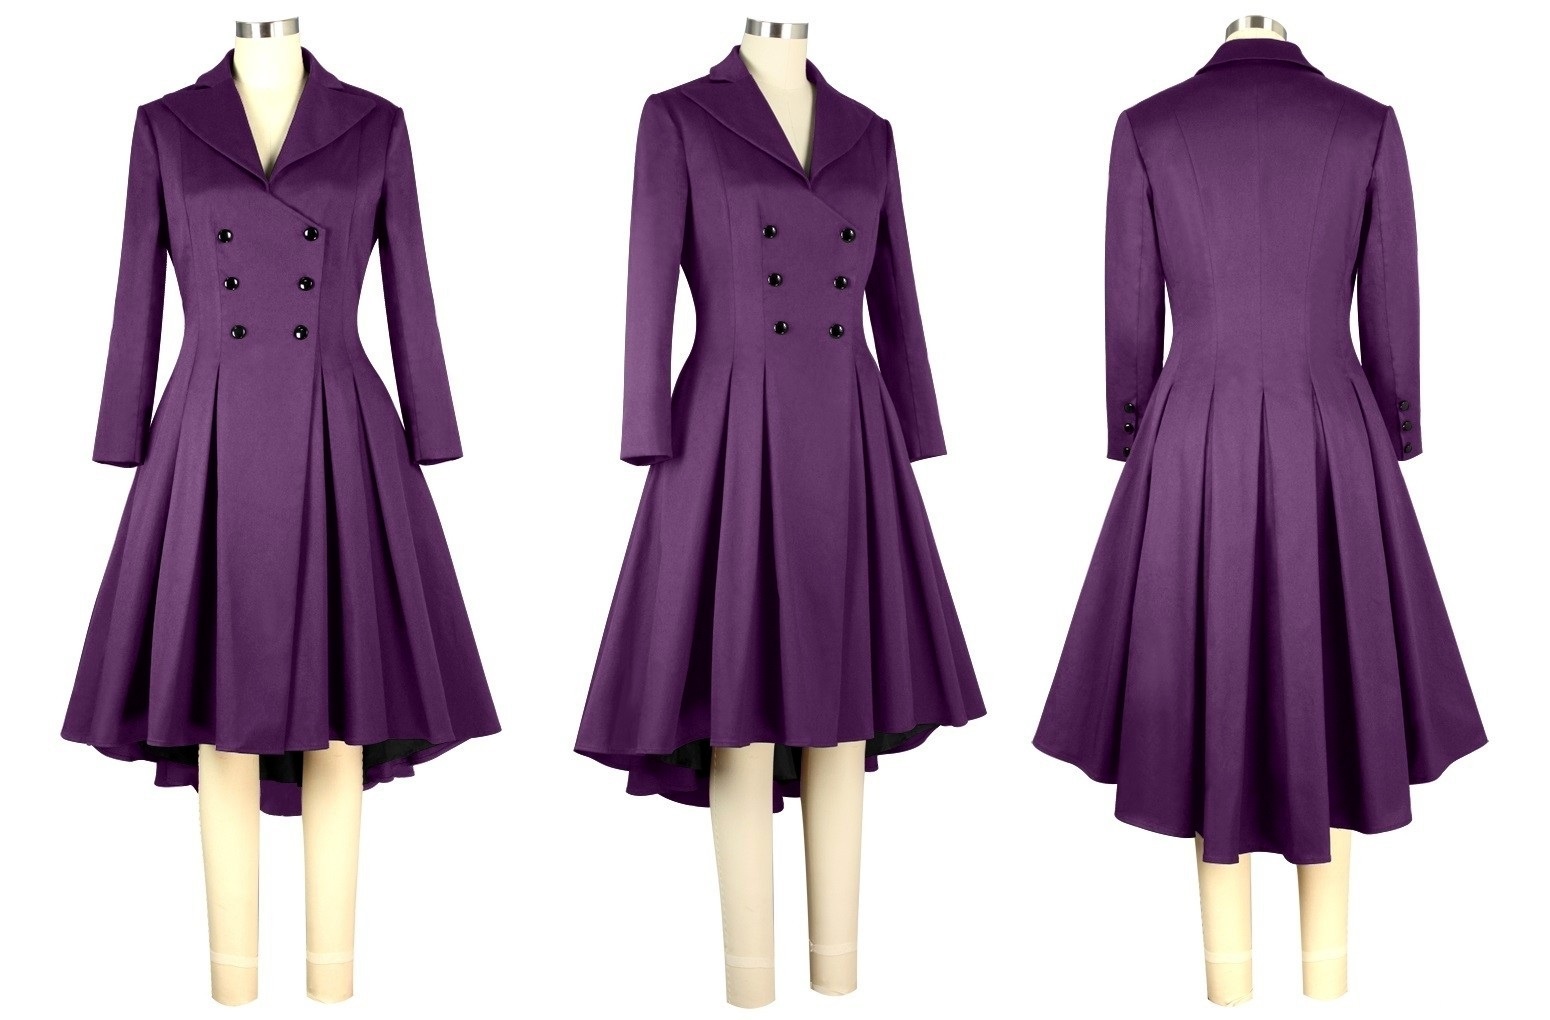 Rockabilly kabát dámský fialový